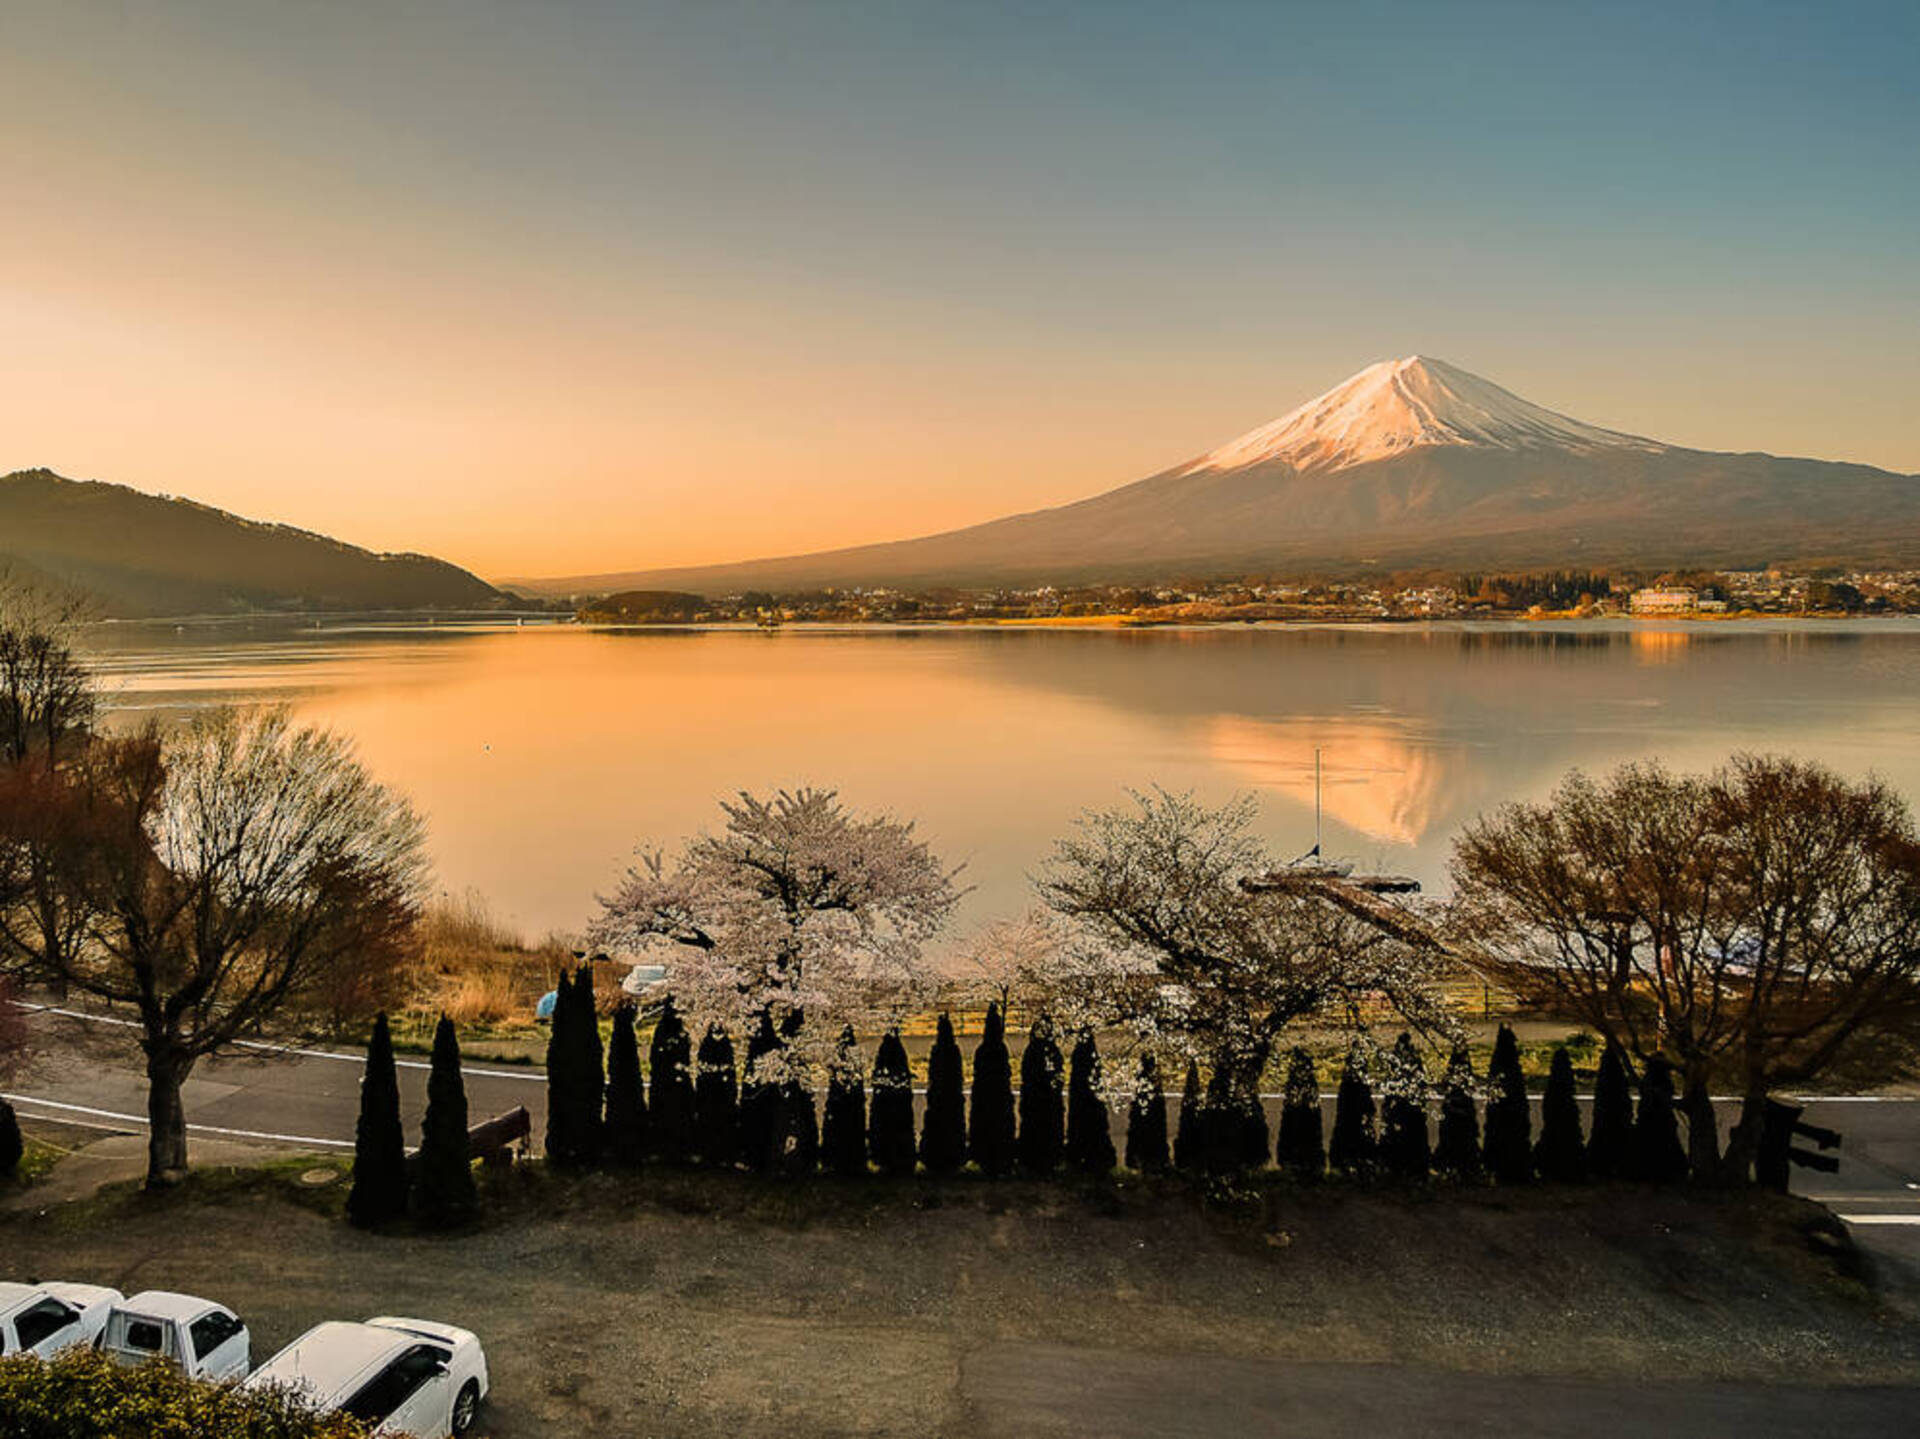 車窓から眺める富士山の姿 富士山が見えるオススメの車中泊スポット9選 静岡 山梨 千葉 長野 1 3 車と旅のwebメディア Mobility Story モビスト